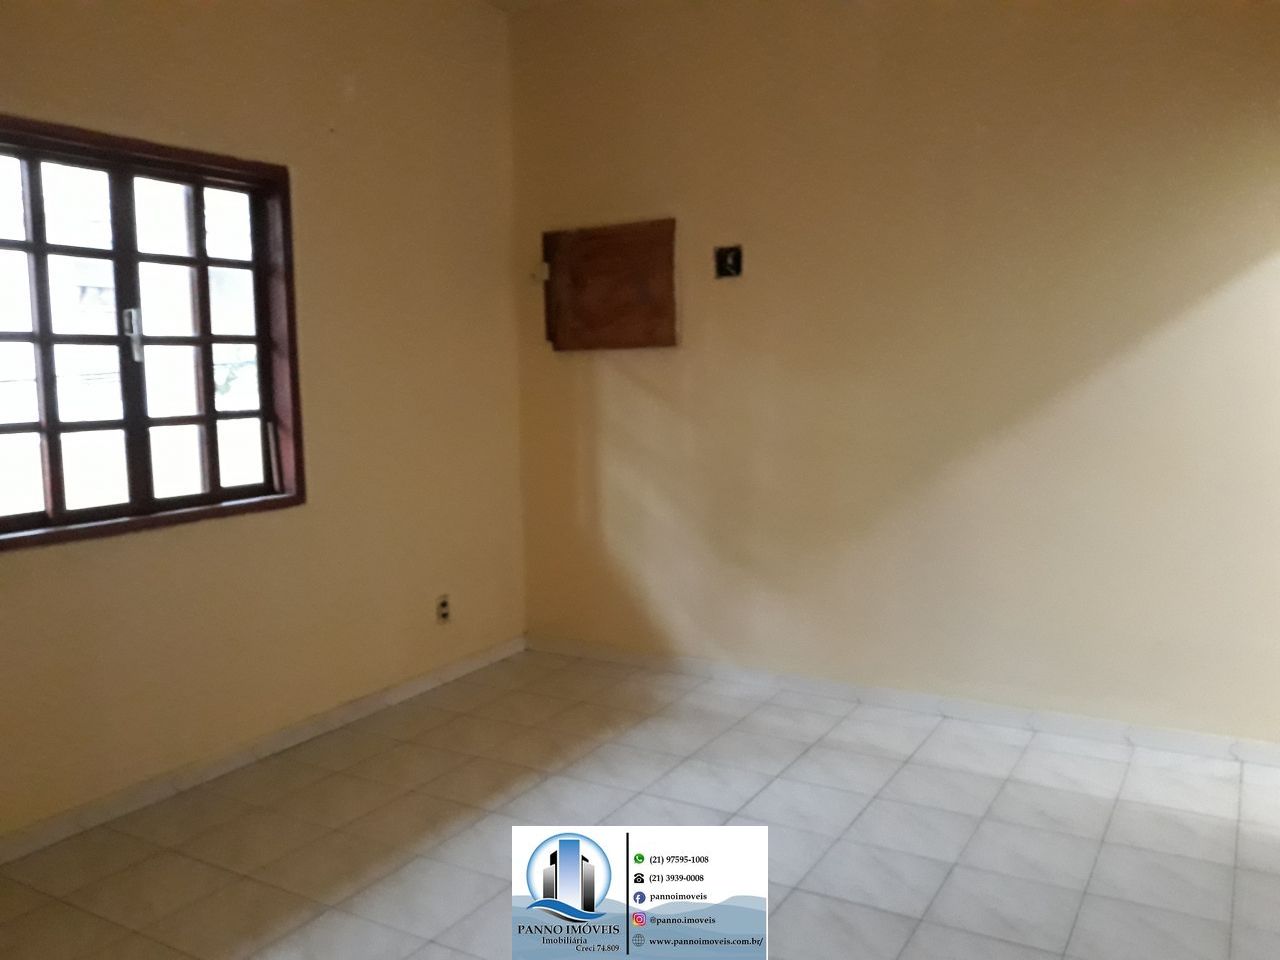 Apartamento com 6 Dormitórios à venda, 100 m² por R$ 300.000,00